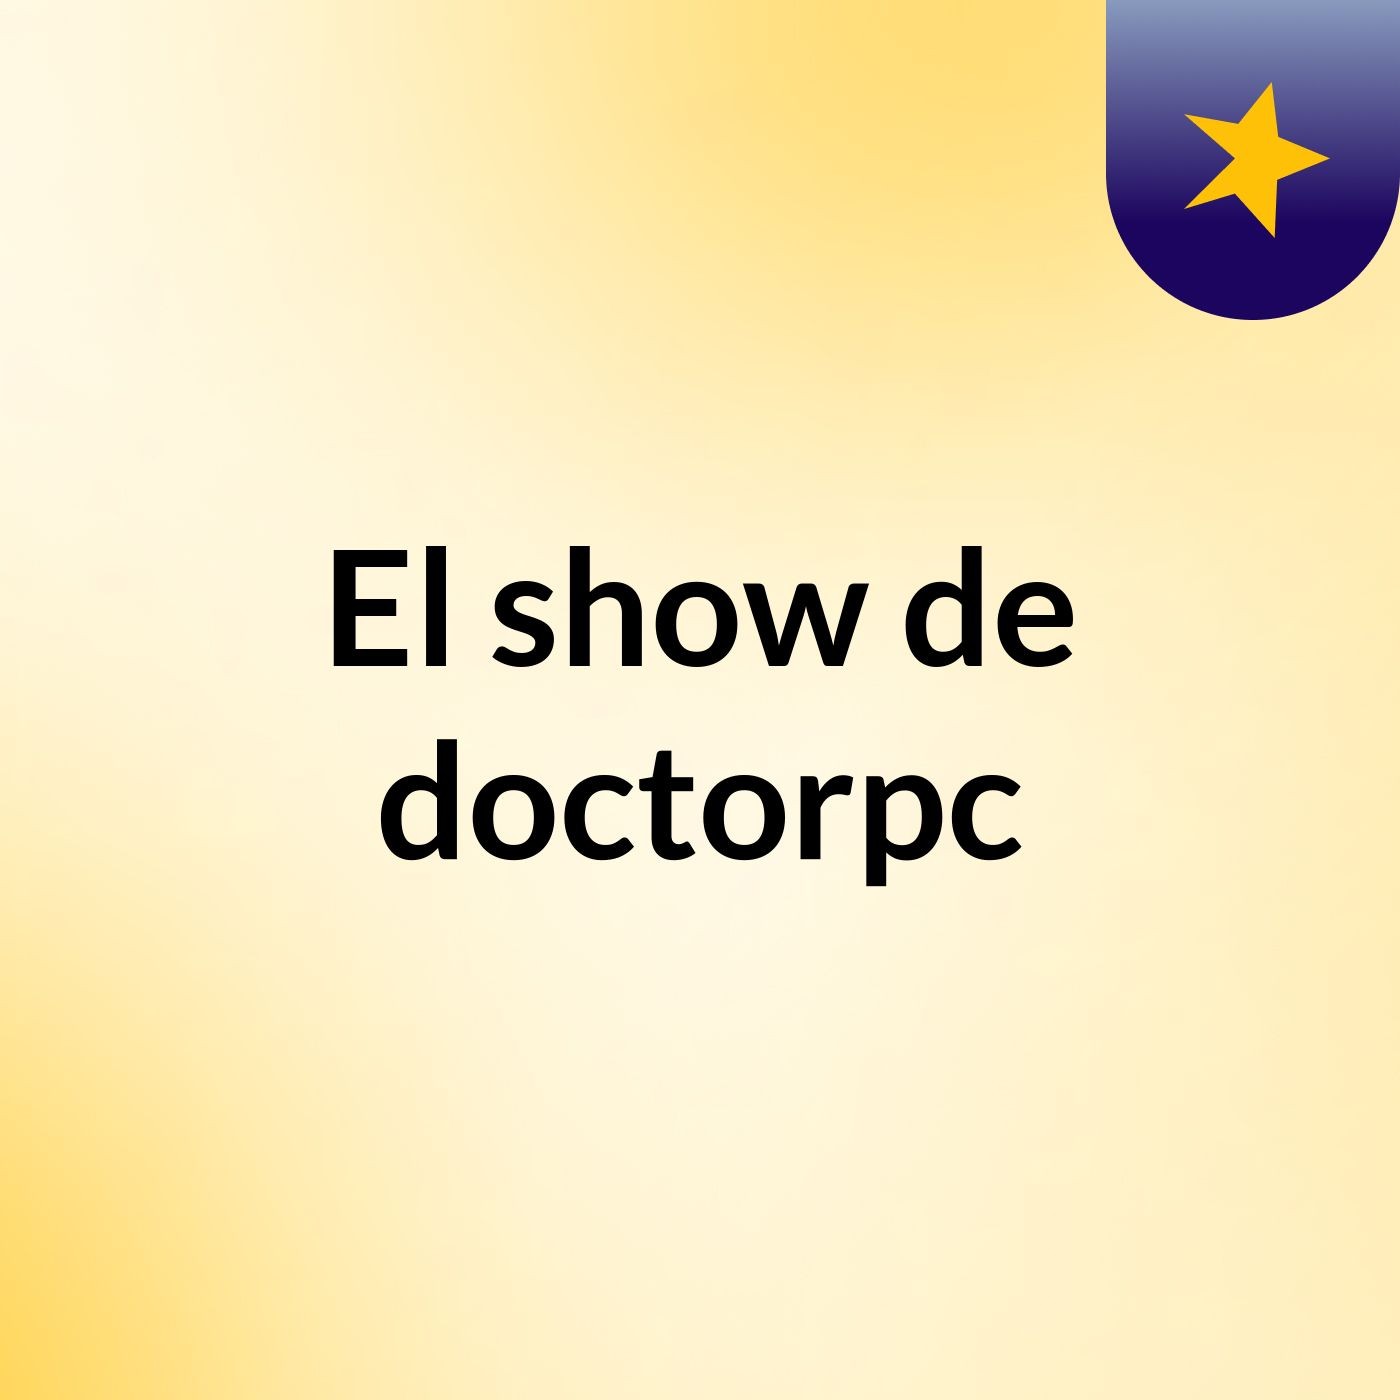 El show de doctorpc